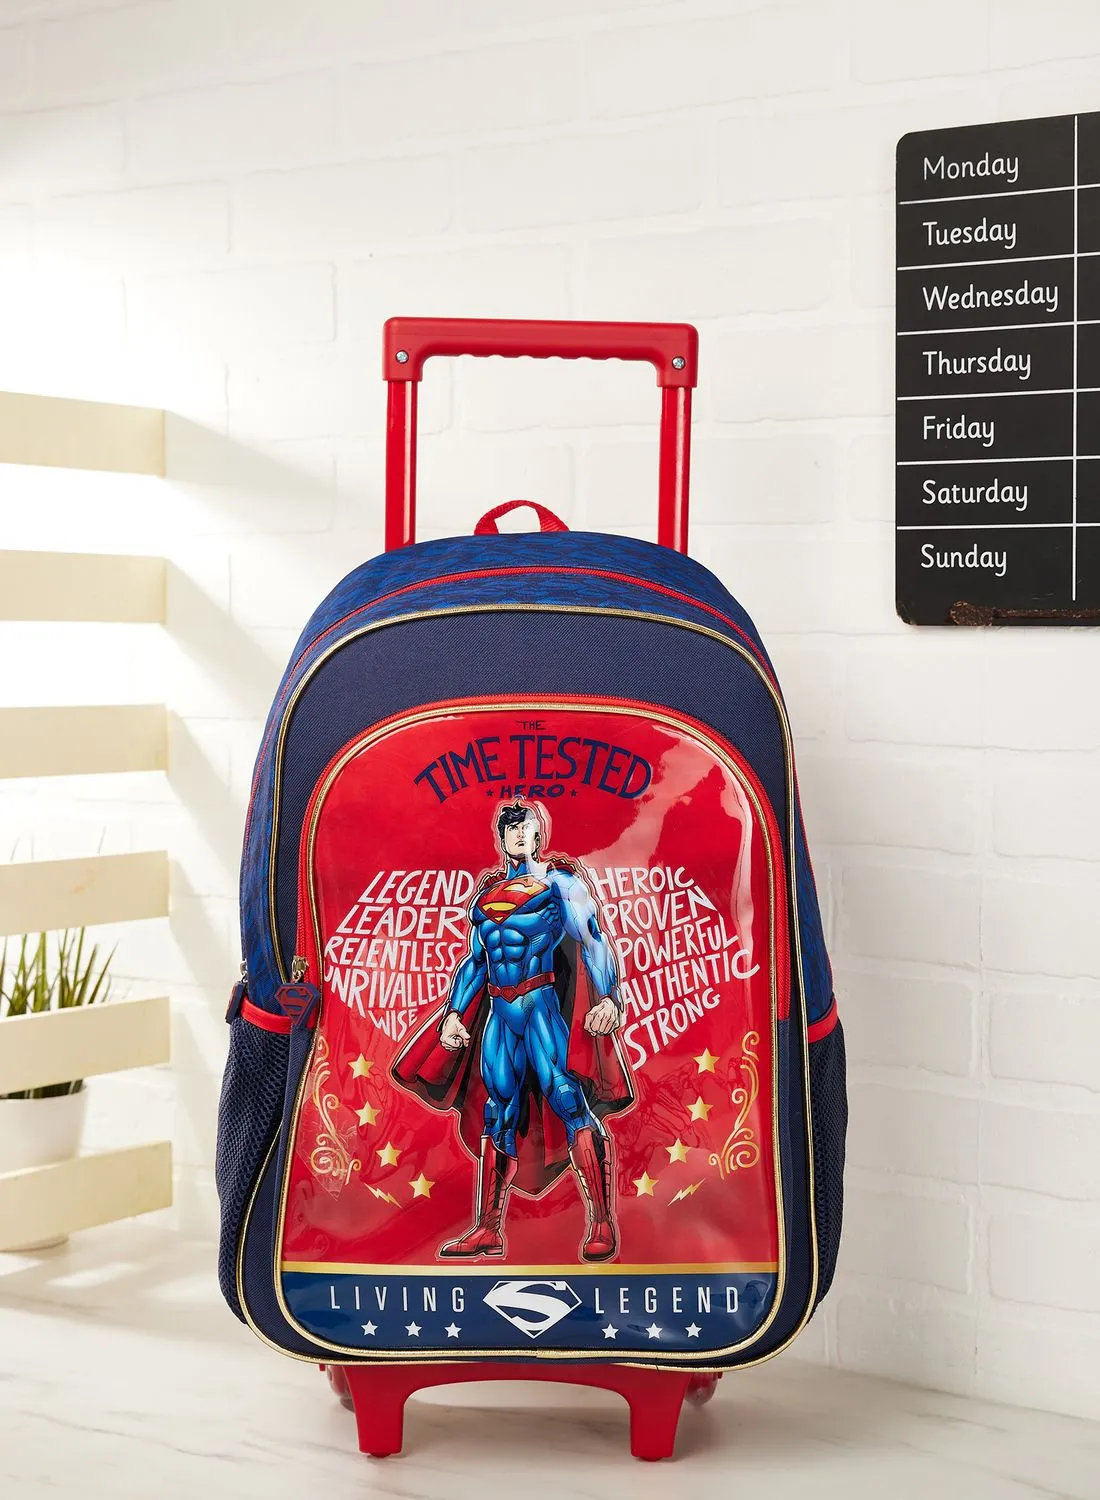 Warner Bros Warner Bros Superman Back To School 5In1 Box Set